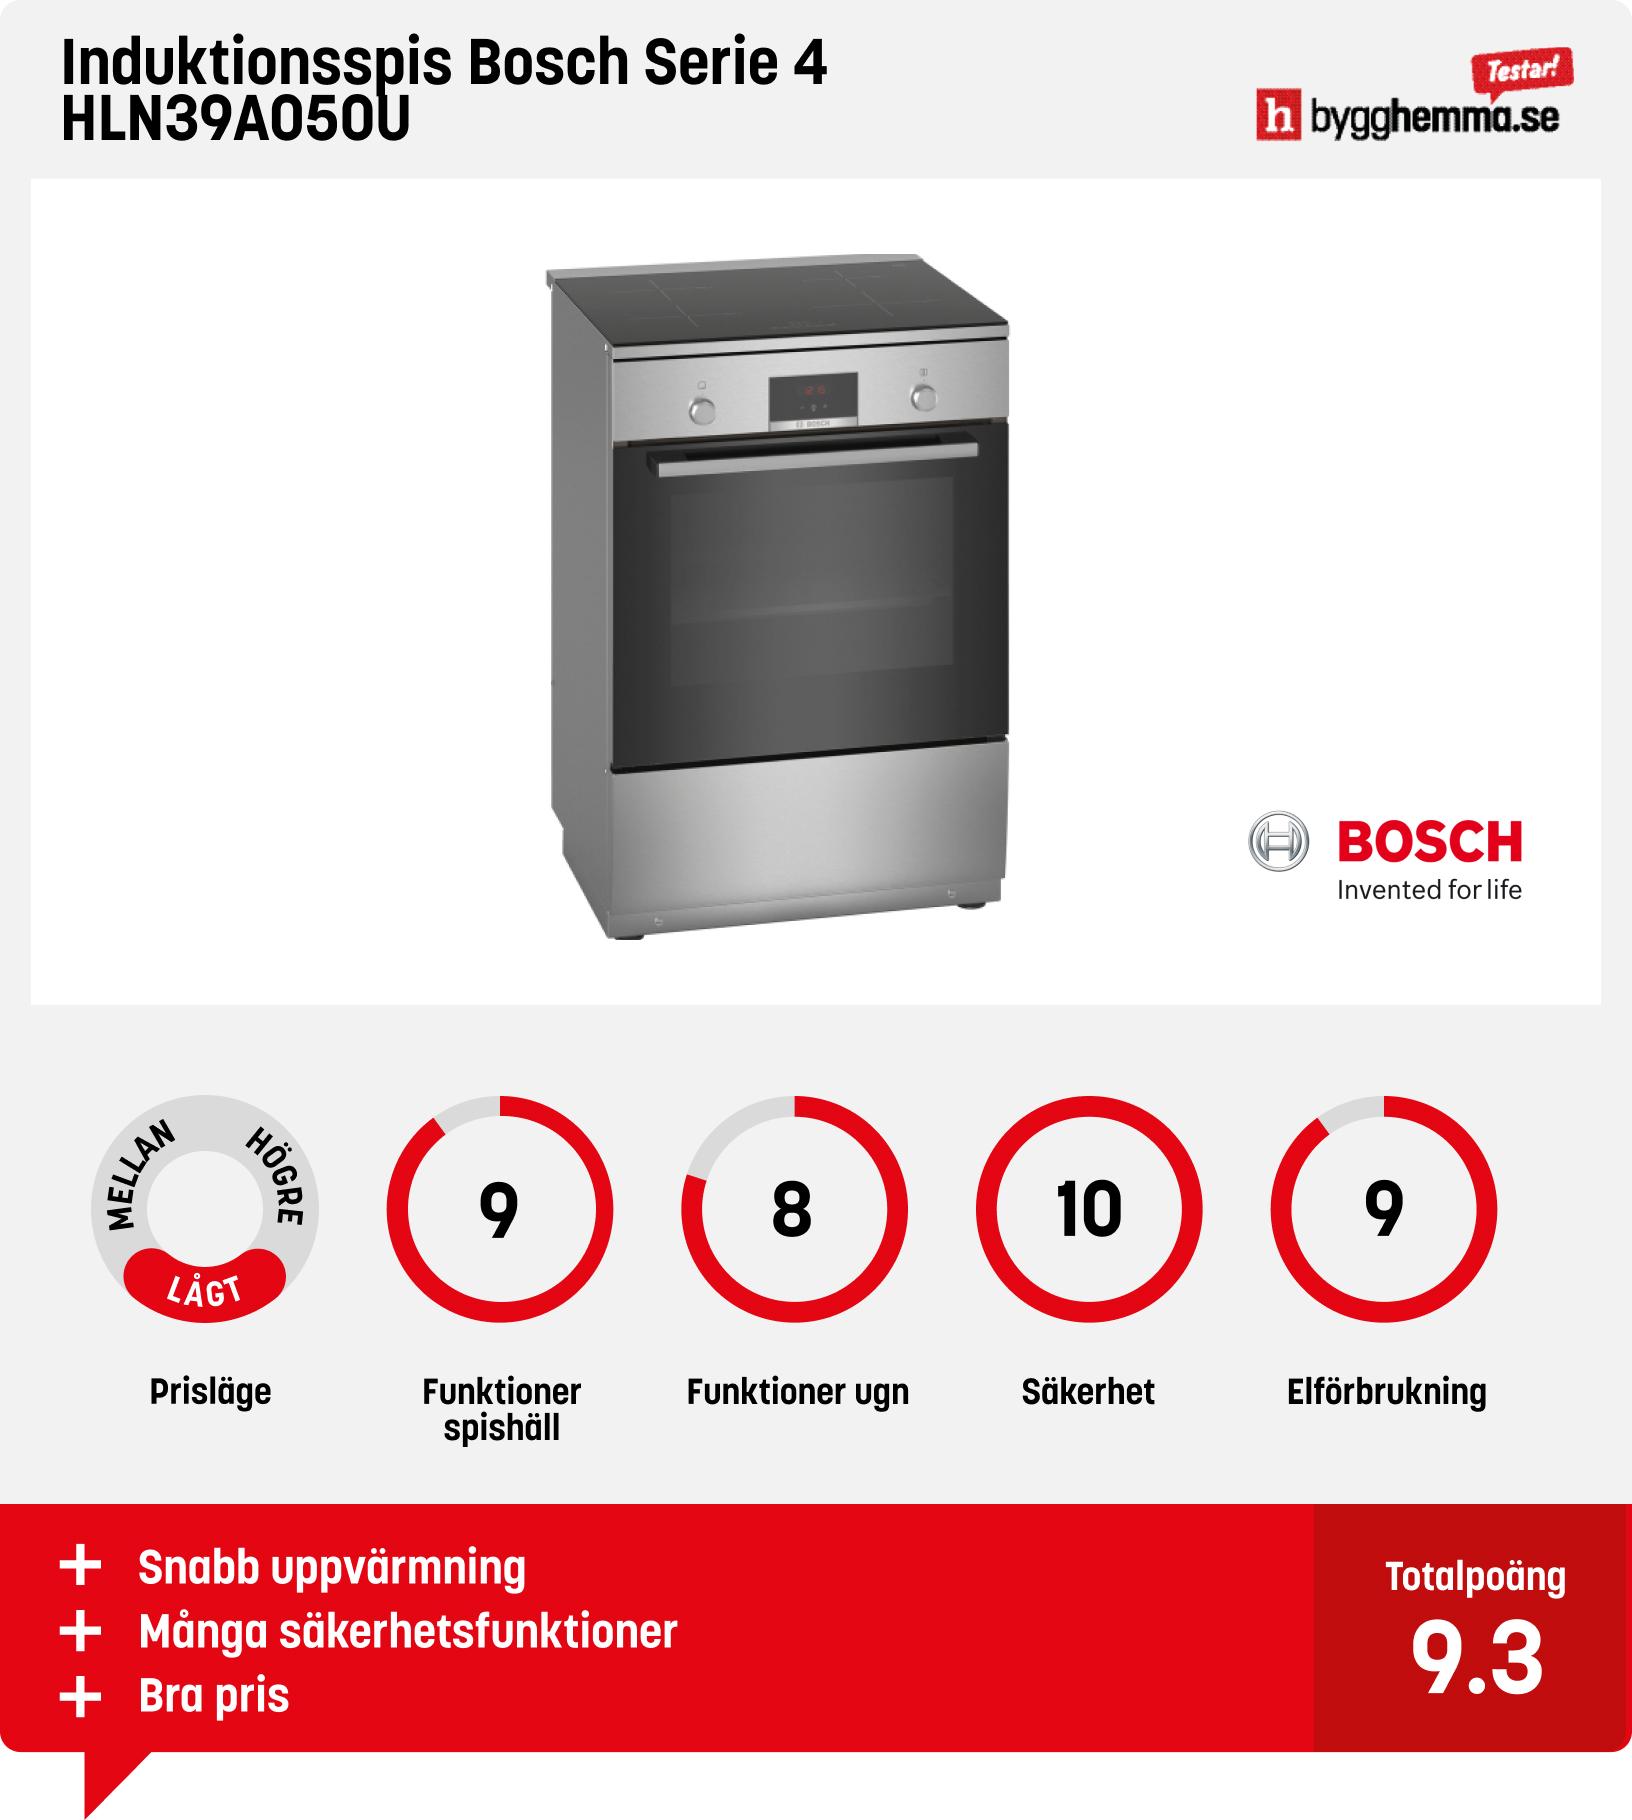 Spis 60 cm bäst i test - Induktionsspis Bosch Serie 4 HLN39A050U